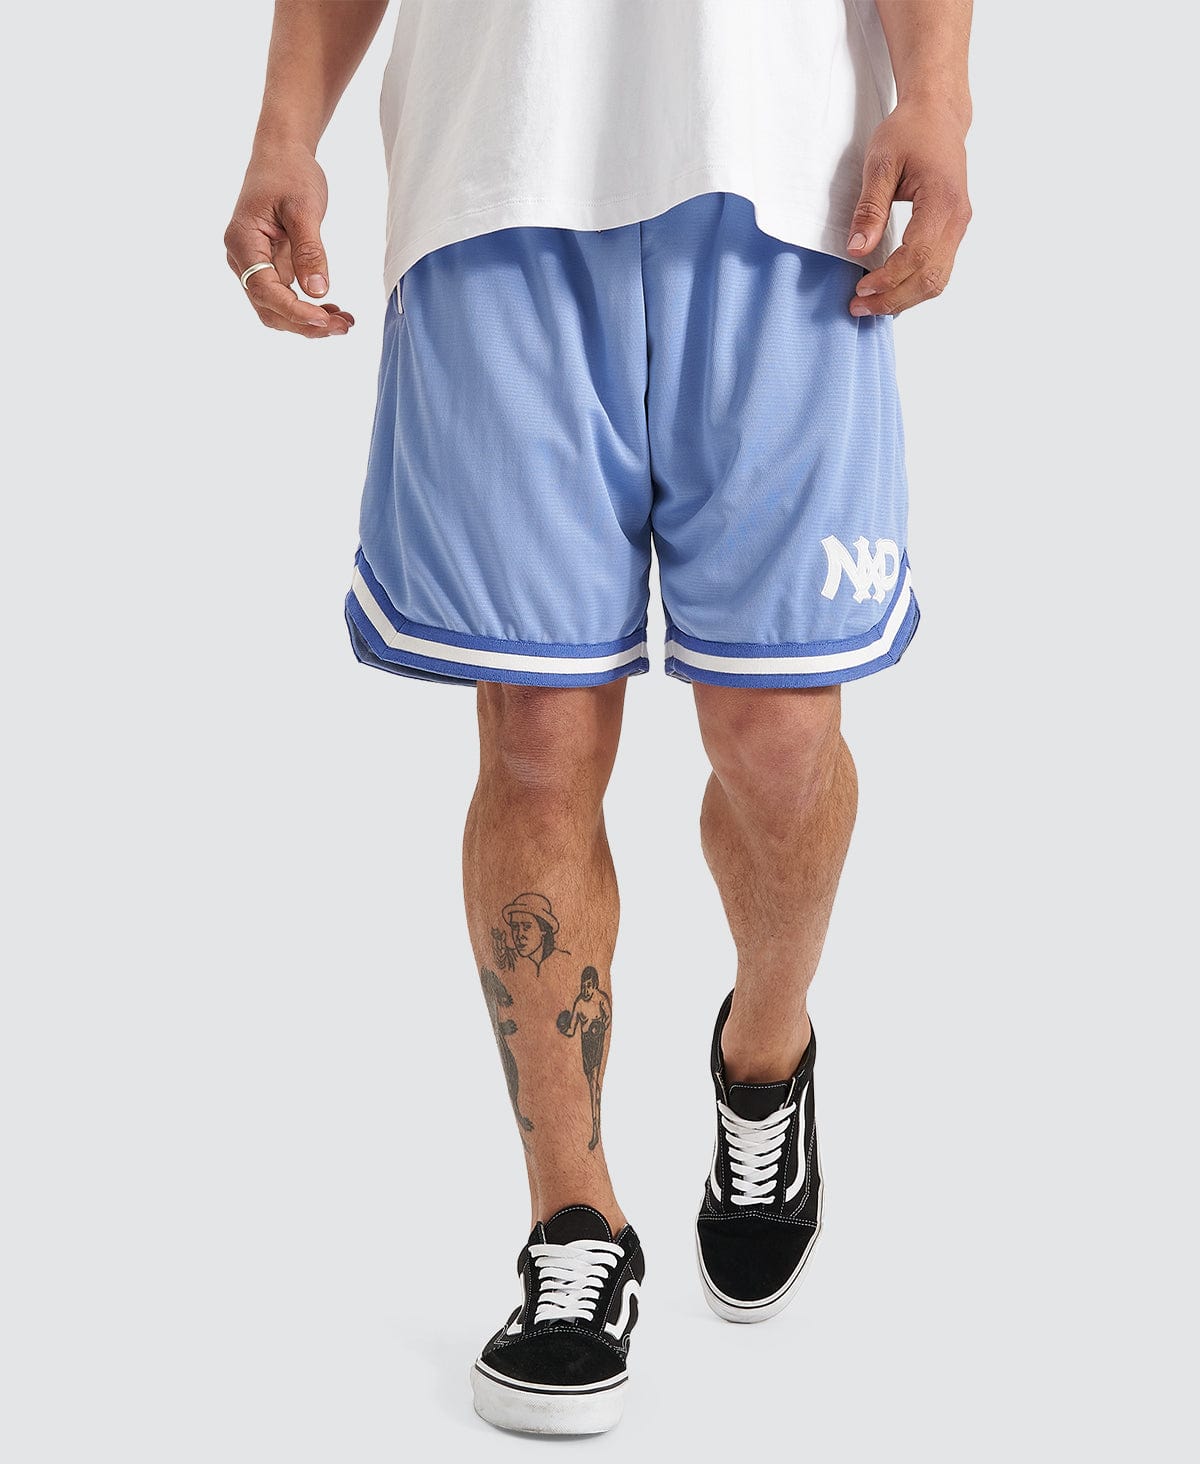 https://neverlandstore.com.au/cdn/shop/files/nena-pasadena-dual-basketball-shorts-blue-35935981404348.jpg?v=1697754545